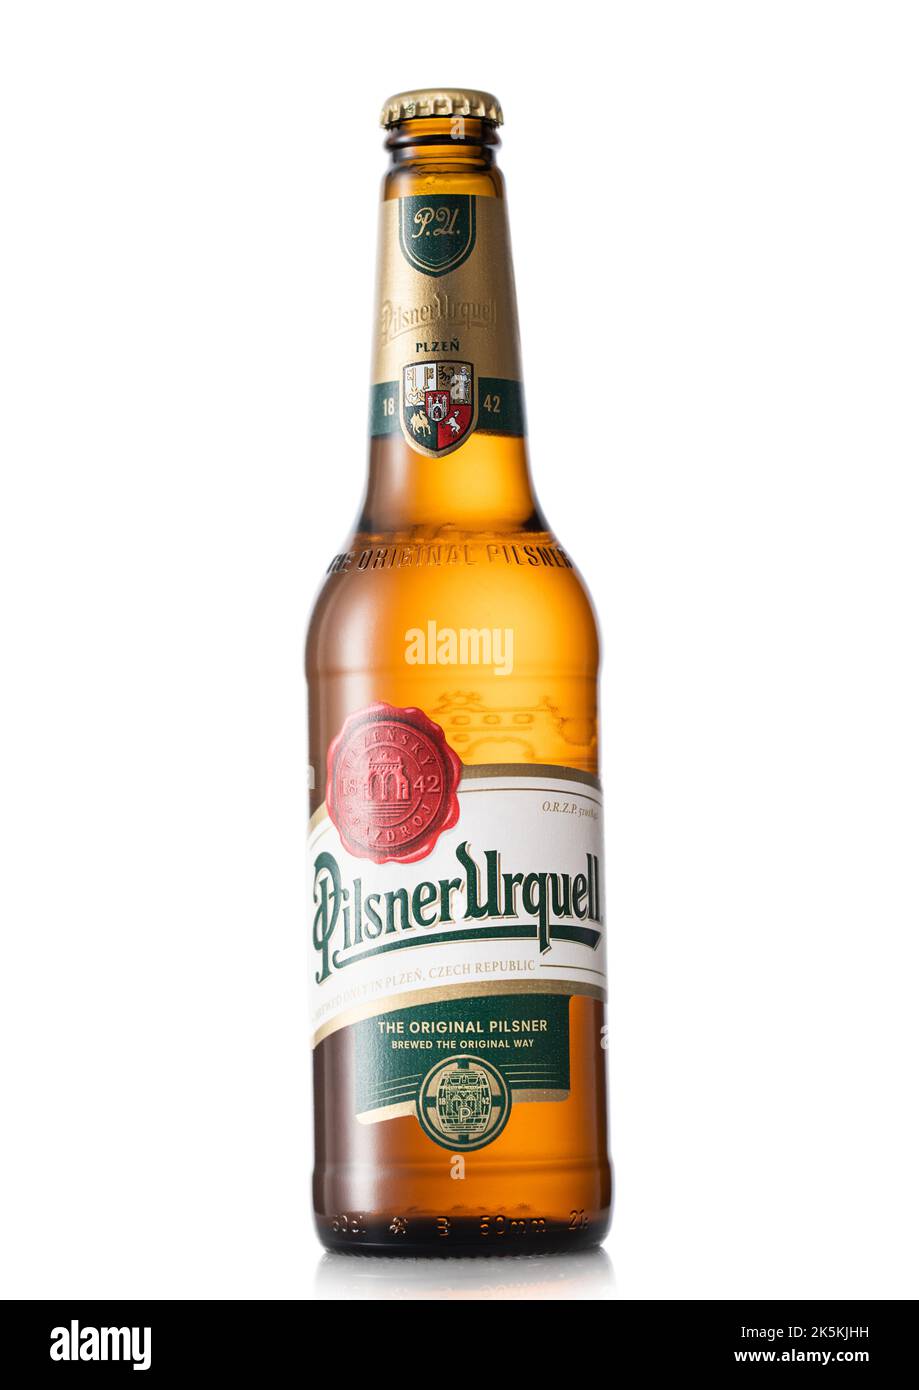 LONDON, UK - JULY 06, 2022: Bottle of Pilsner Urquell czech premium lager beer on white . Stock Photo